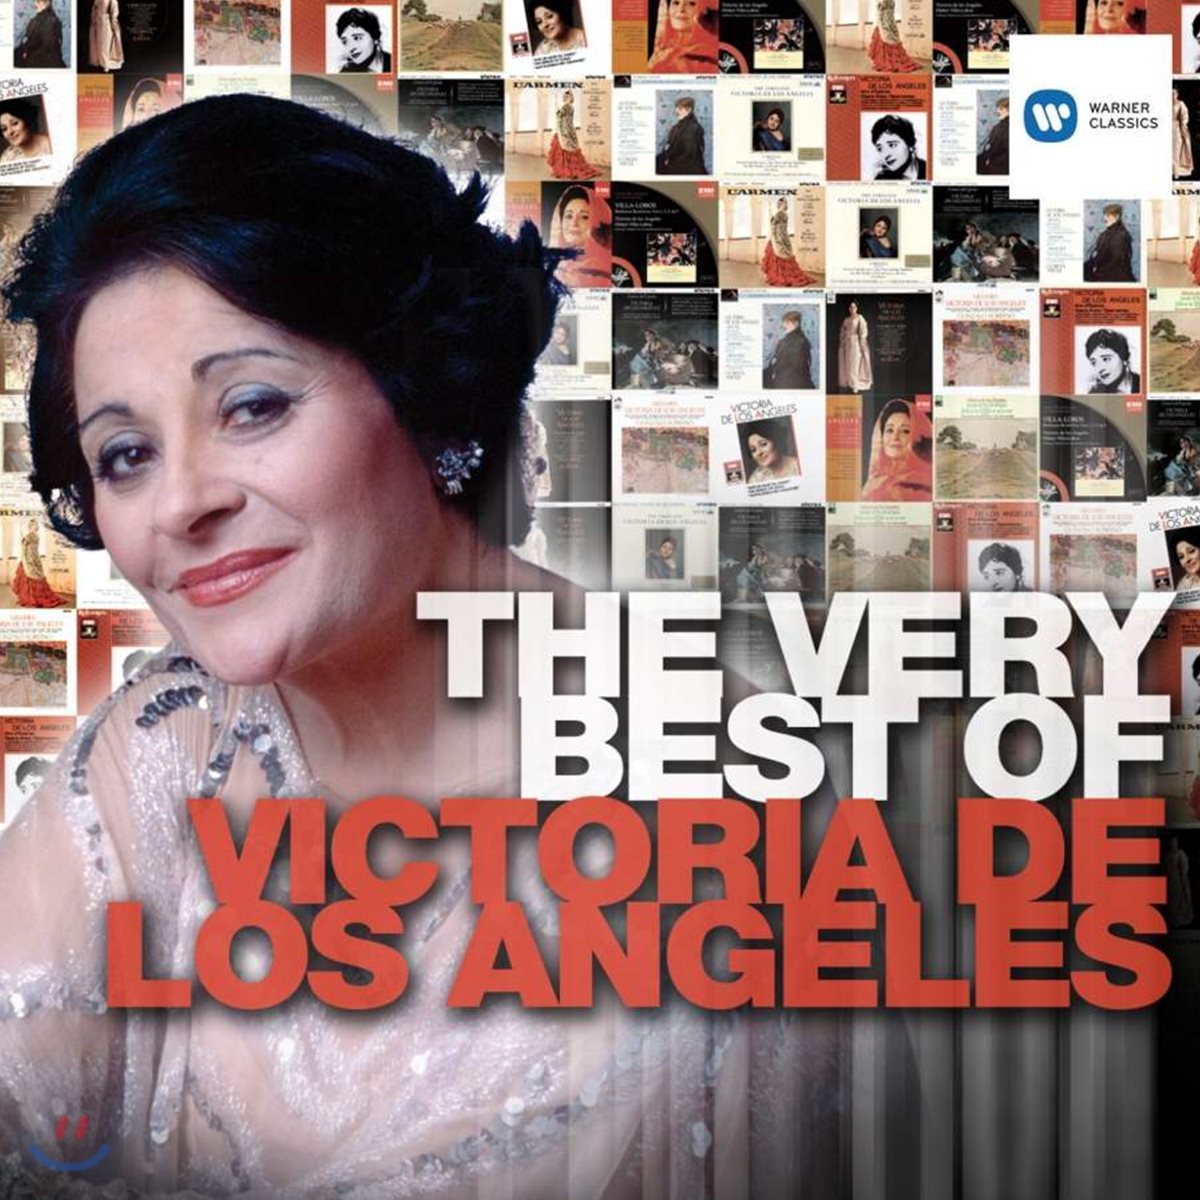 Victoria de los Angeles 베스트 오브 빅토리아 데스 로스 앙헬레스 (The Very Best of Victoria de los Angeles)